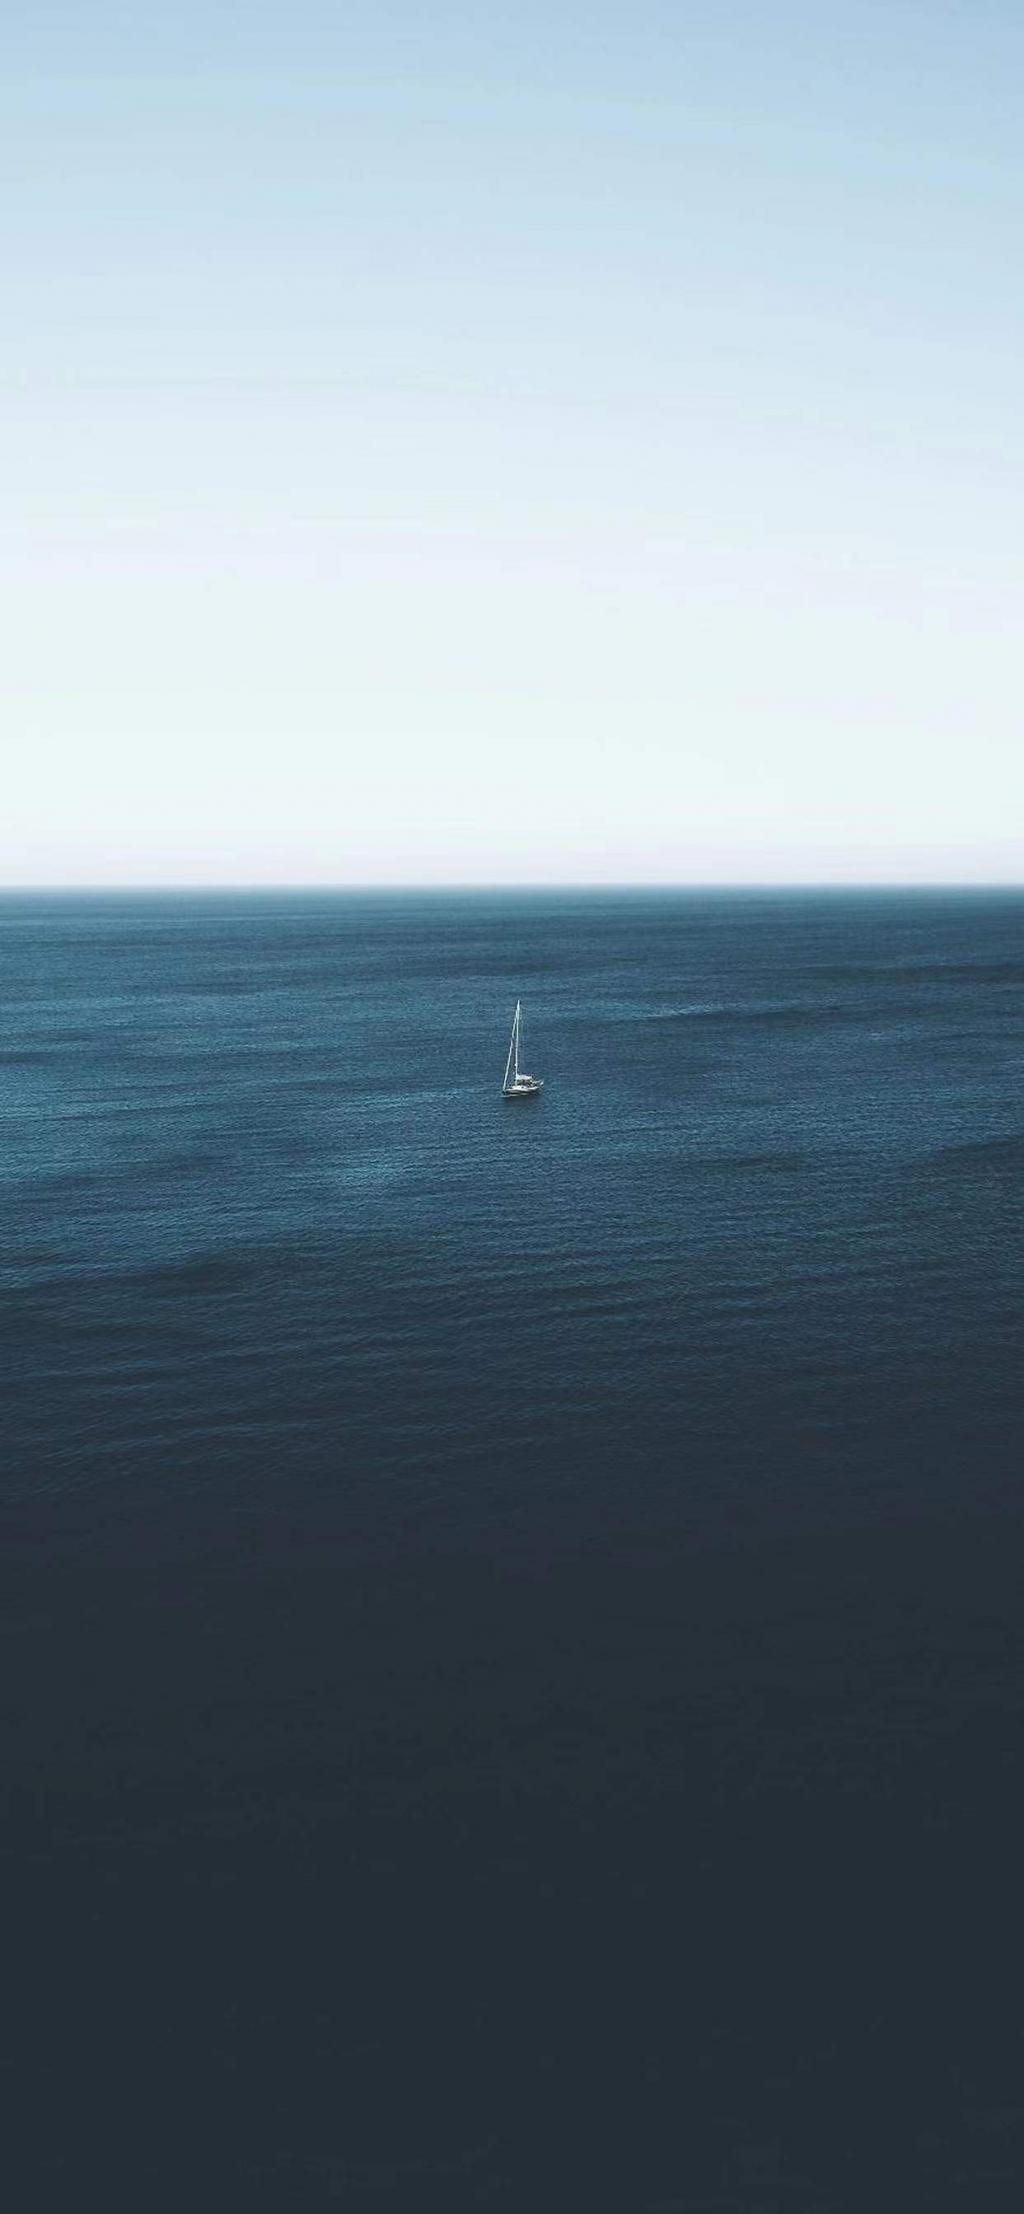 海上孤帆景深壁纸